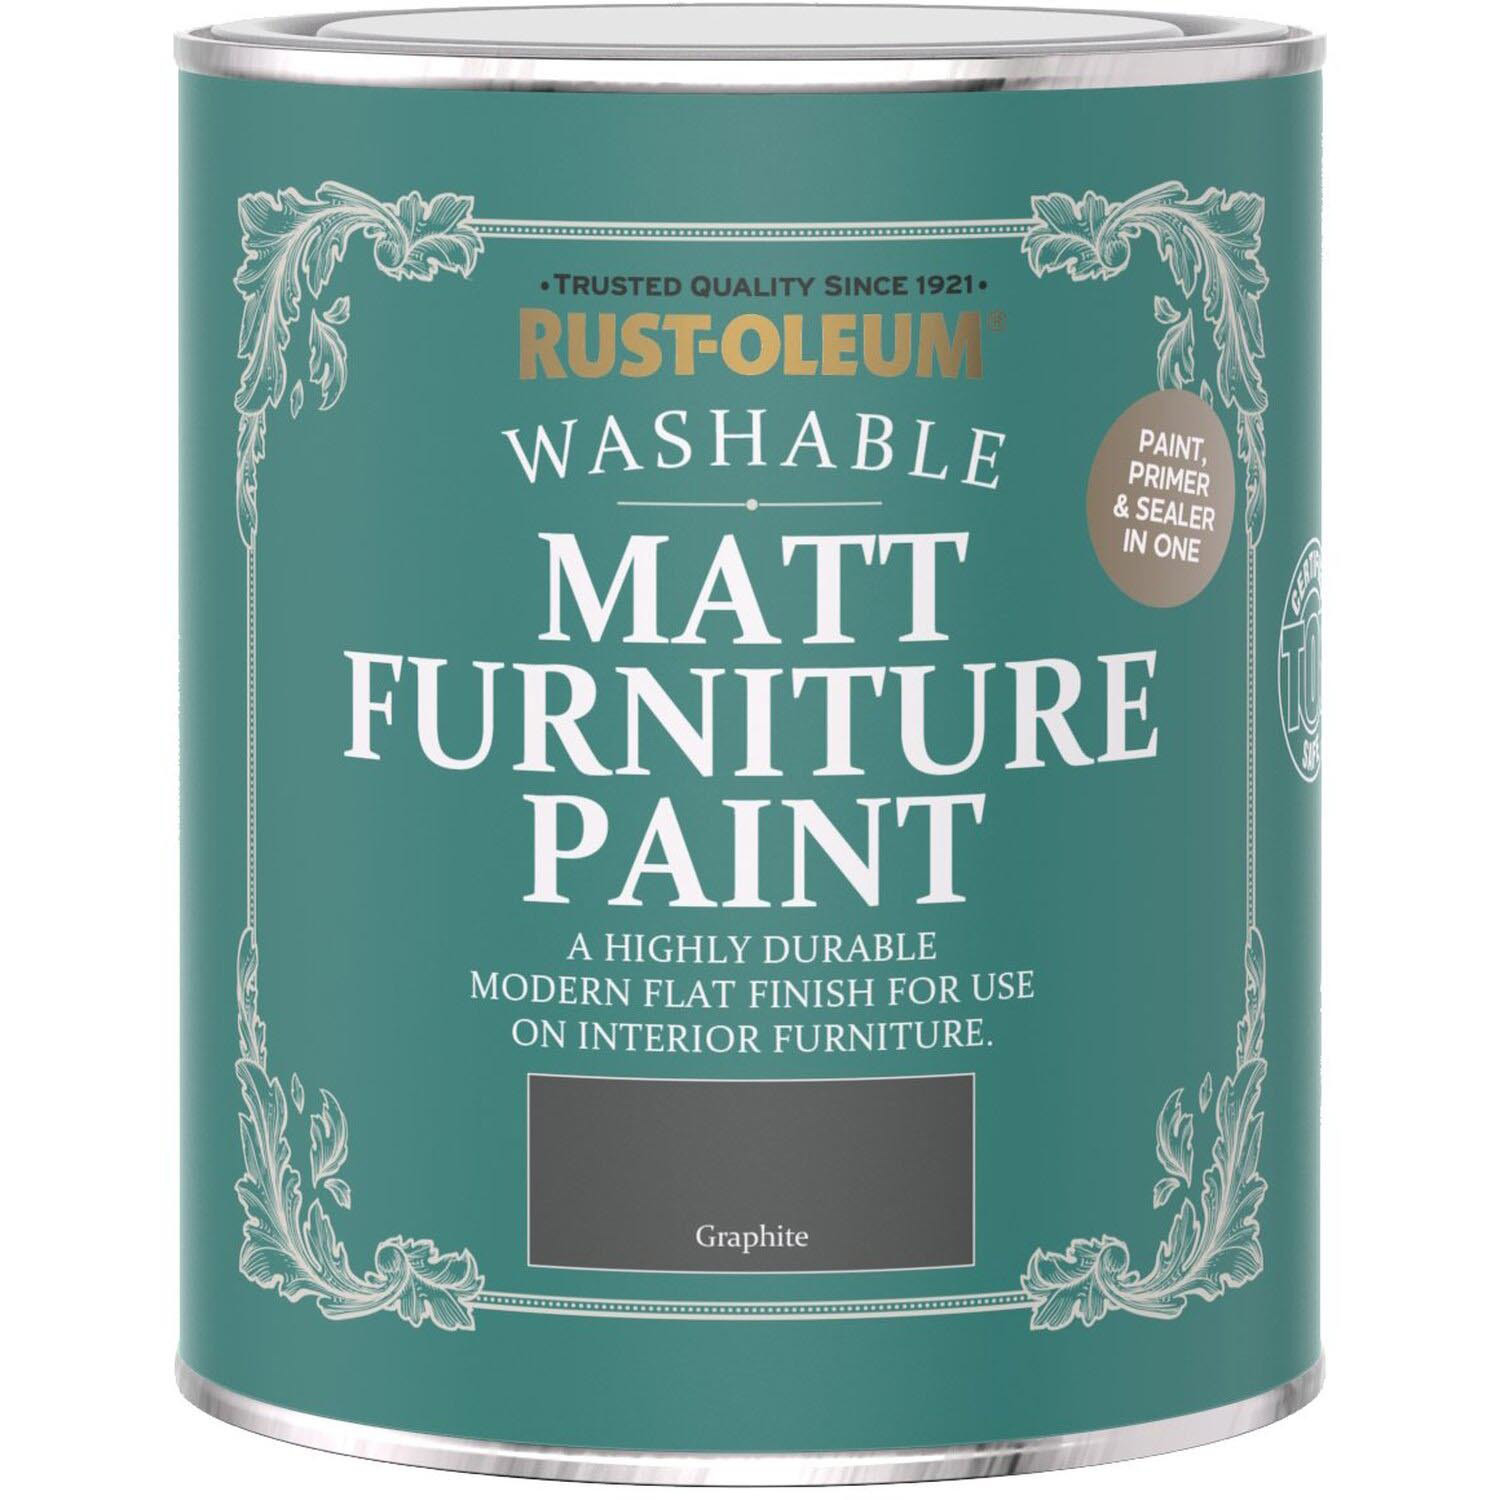 Rust-Oleum Graphite Matt Furniture Paint 750ml Image 2